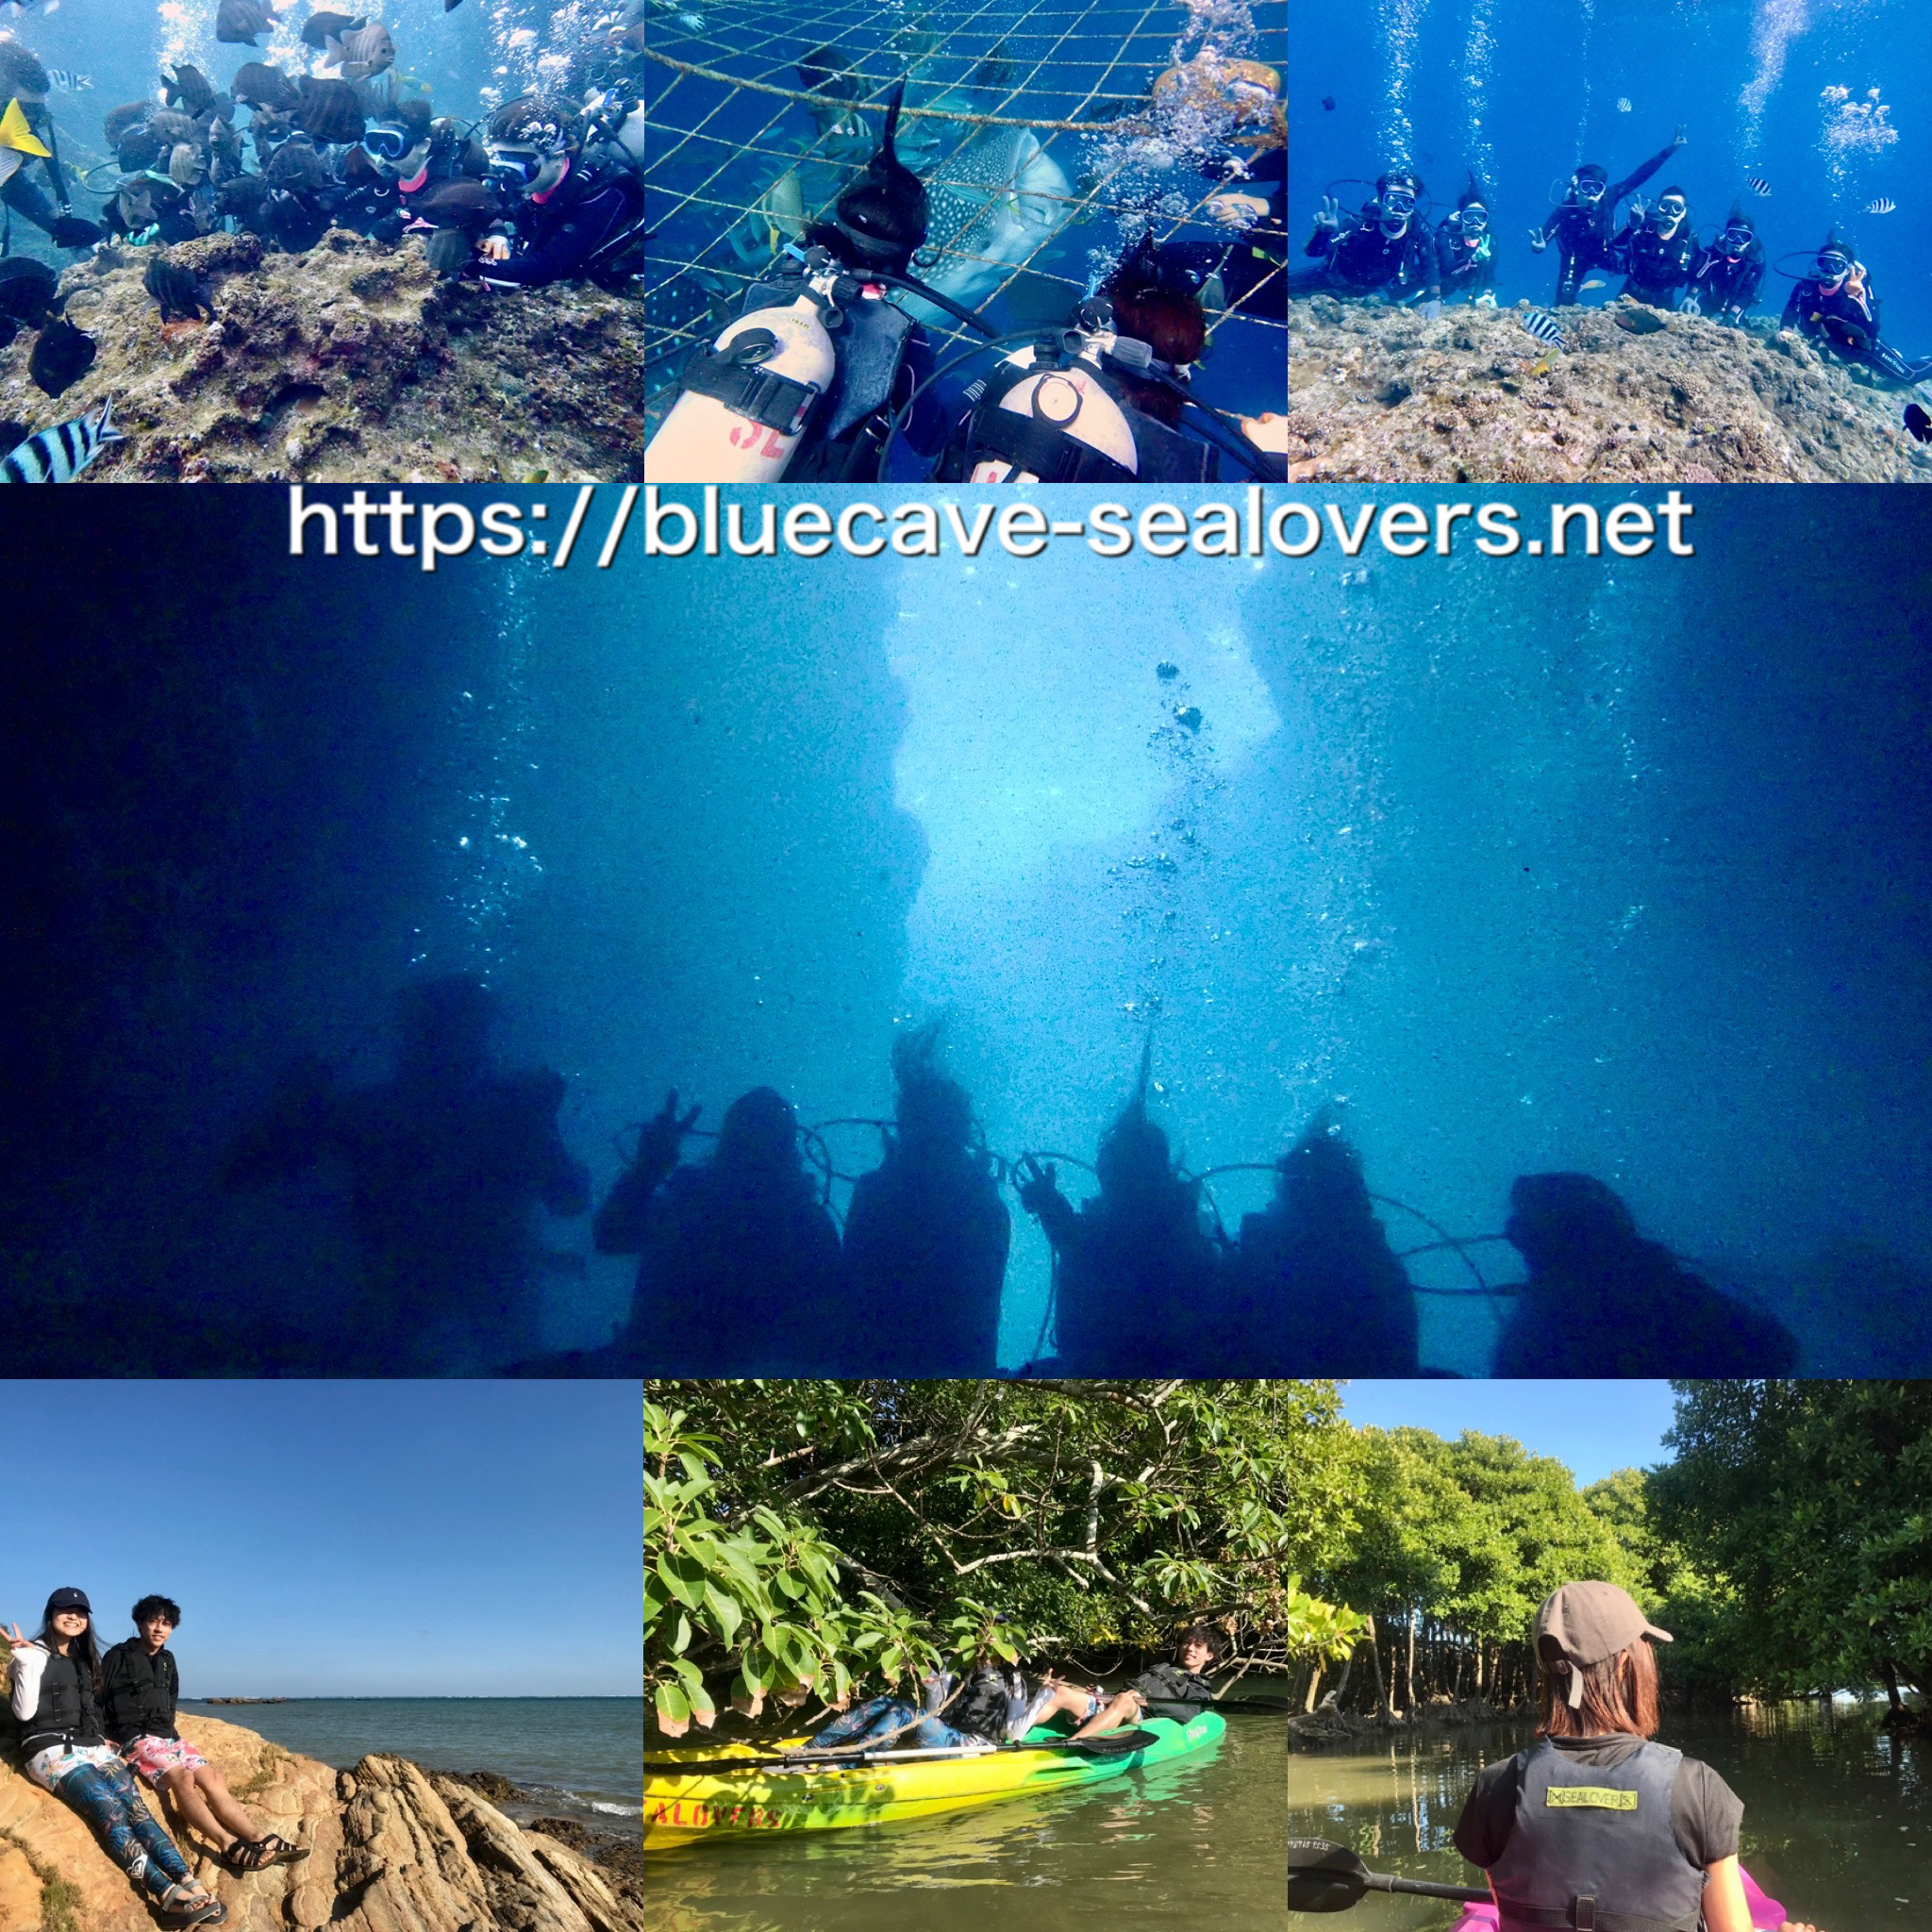 青の洞窟ボート体験ダイビング、ジンベイザメ観察体験ダイビング、億首川マングローブカヤック